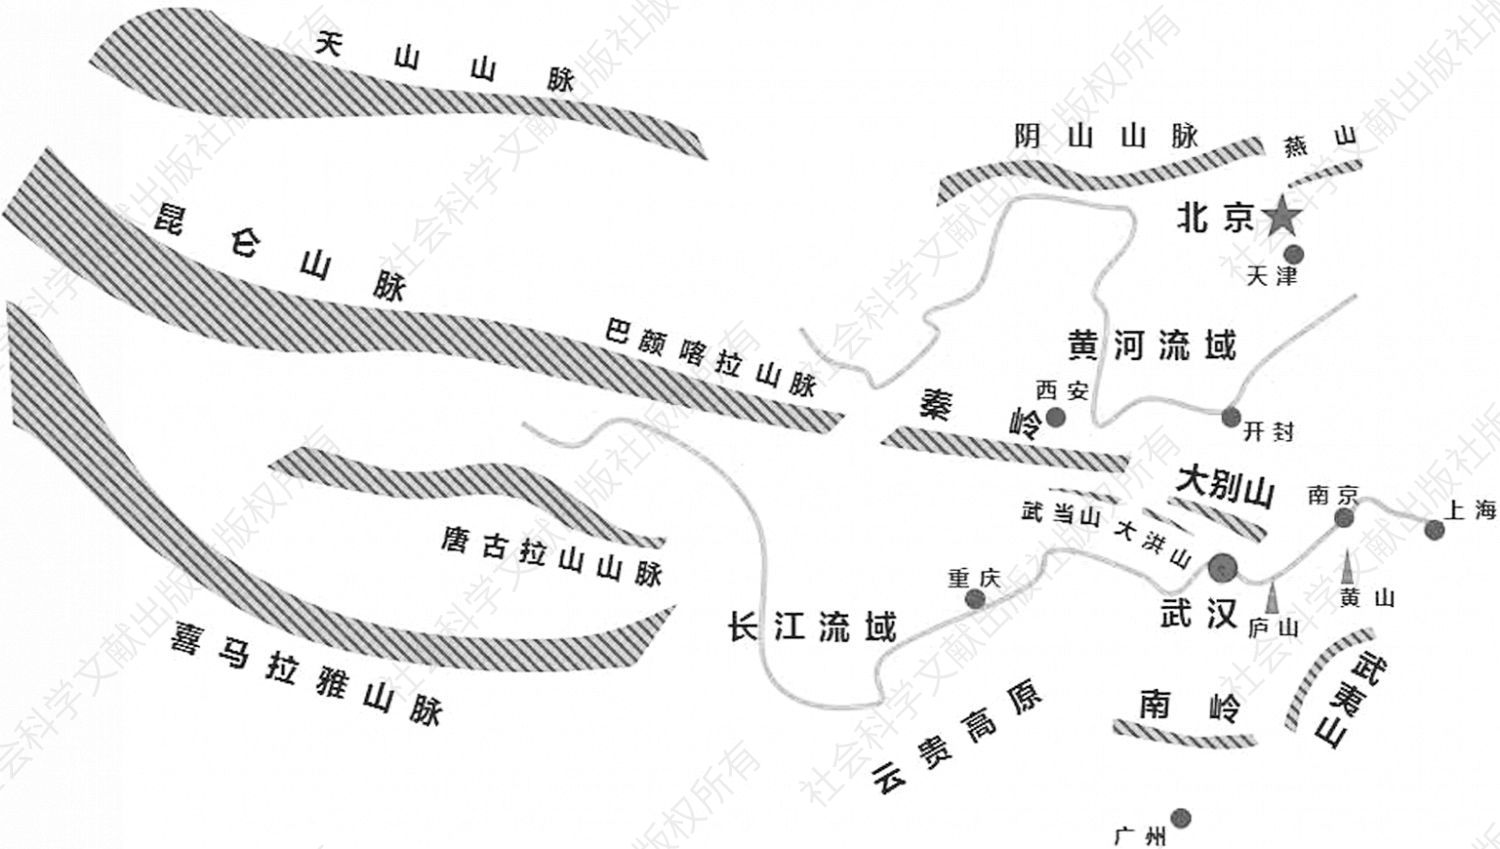 图1 武汉在中华地脉文脉格局图上的位置